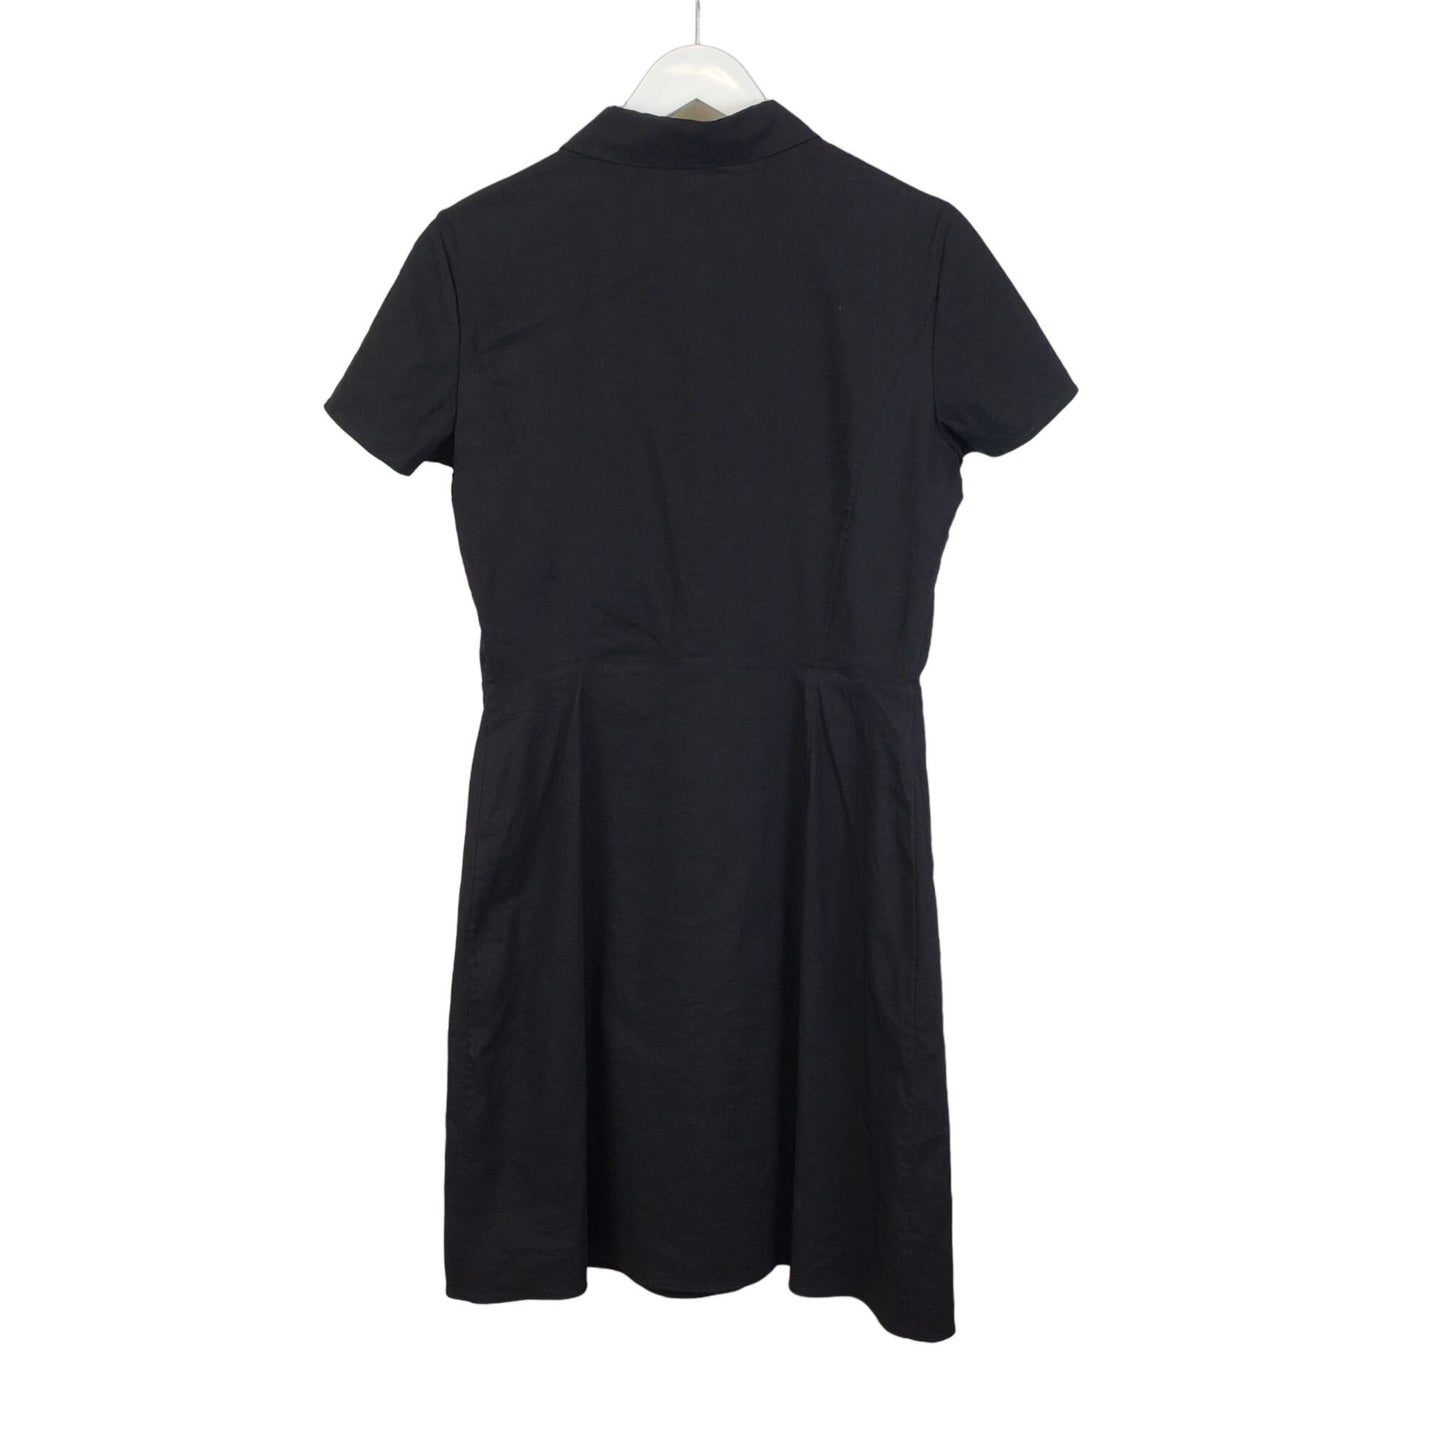 Theory SS BD Eco Crunch Linen Blend Shirt Dress Size 8